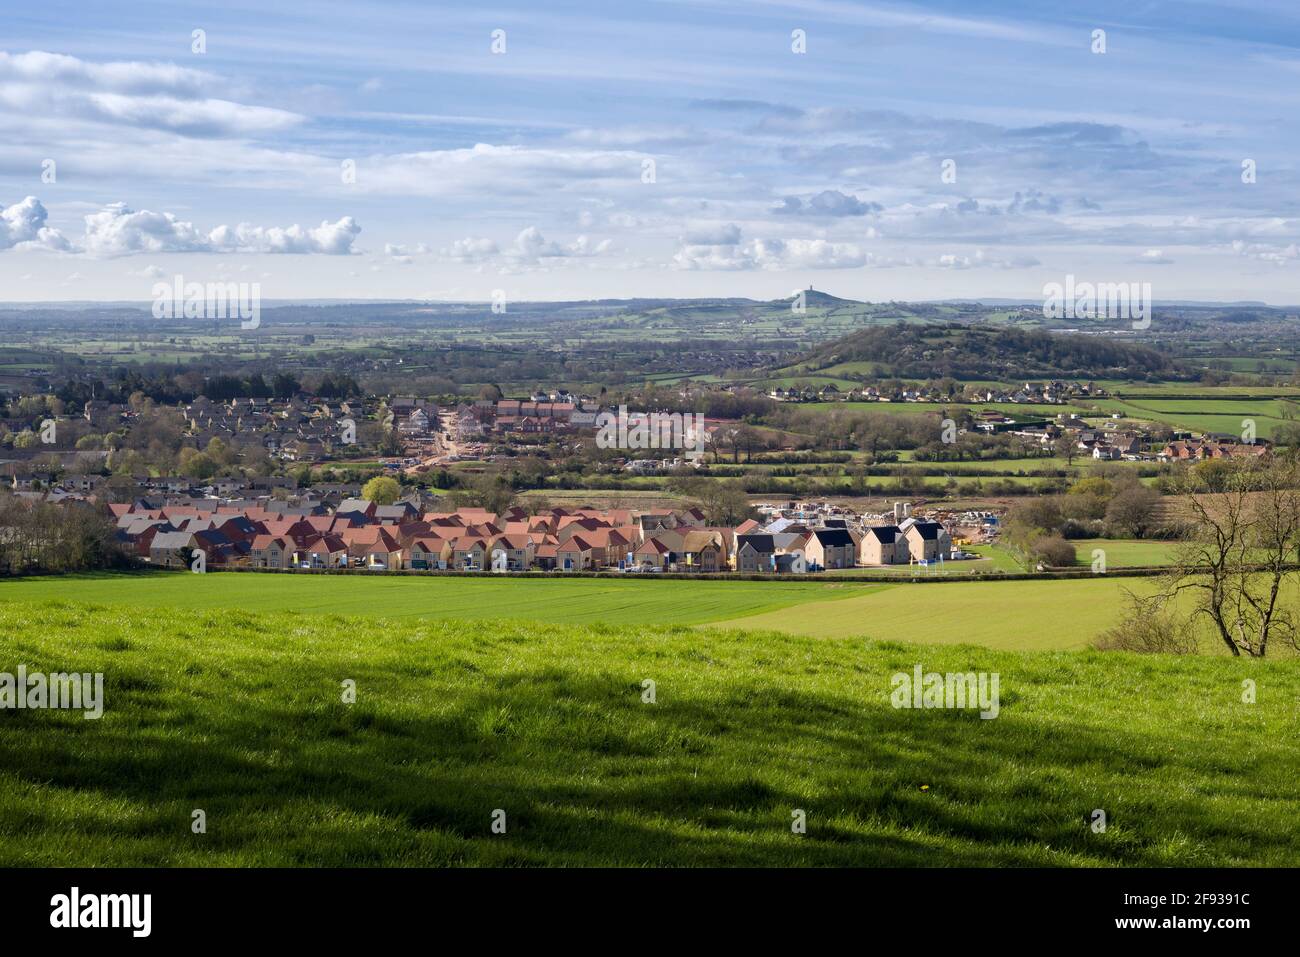 Grandi nuove proprietà abitative in costruzione alla periferia della città di Wells, ai margini delle colline Mendip, Somerset, Inghilterra. Foto Stock